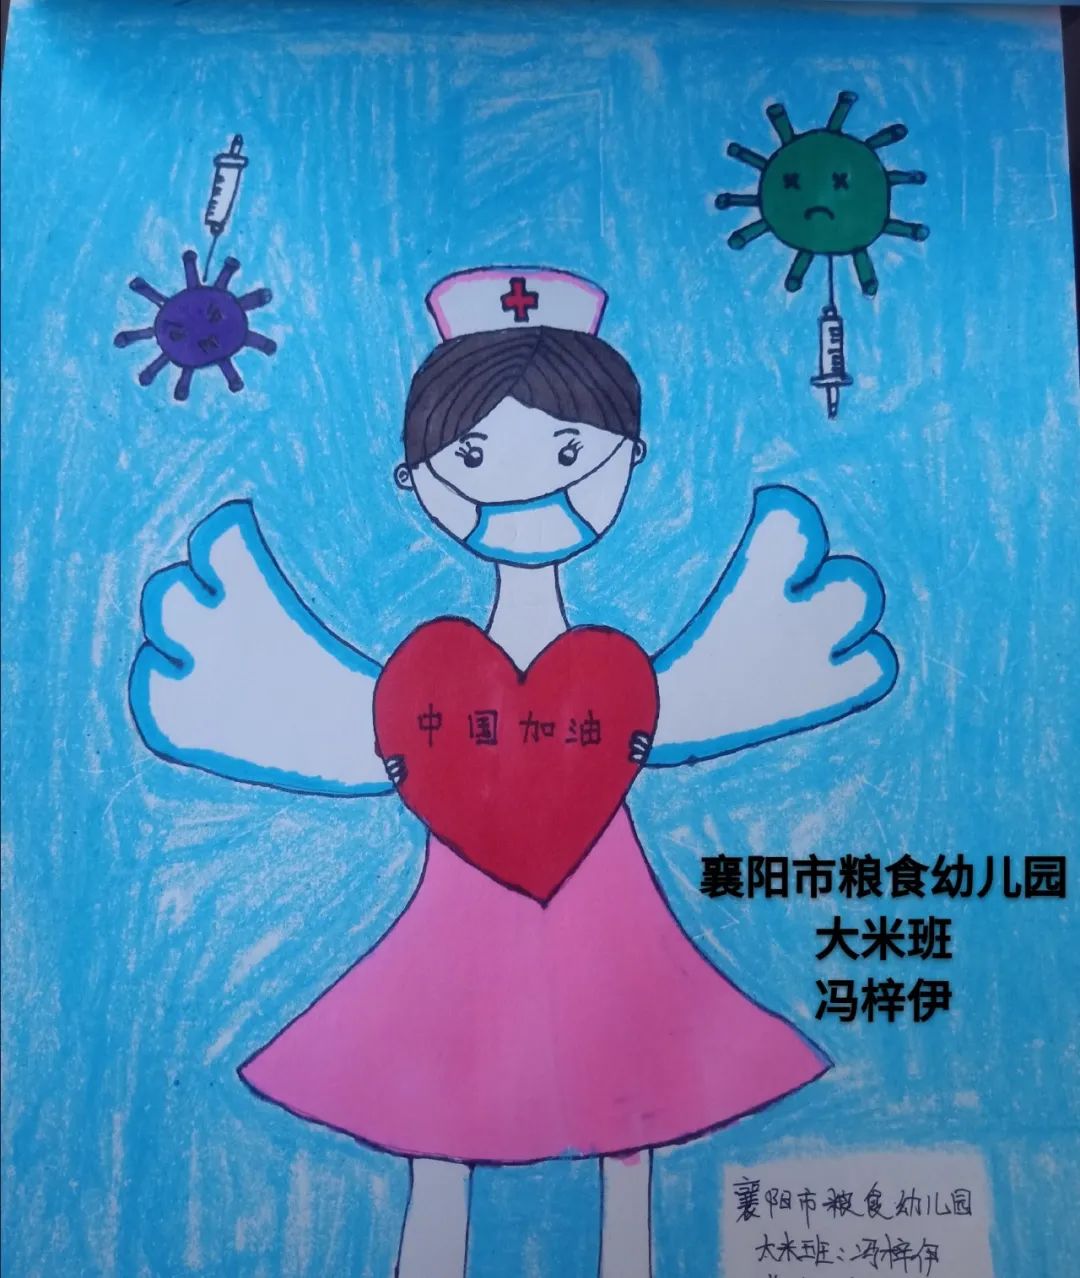 2020年2月17日至3月5日,襄阳市少年儿童图书馆为鼓舞抗疫斗志,坚定抗